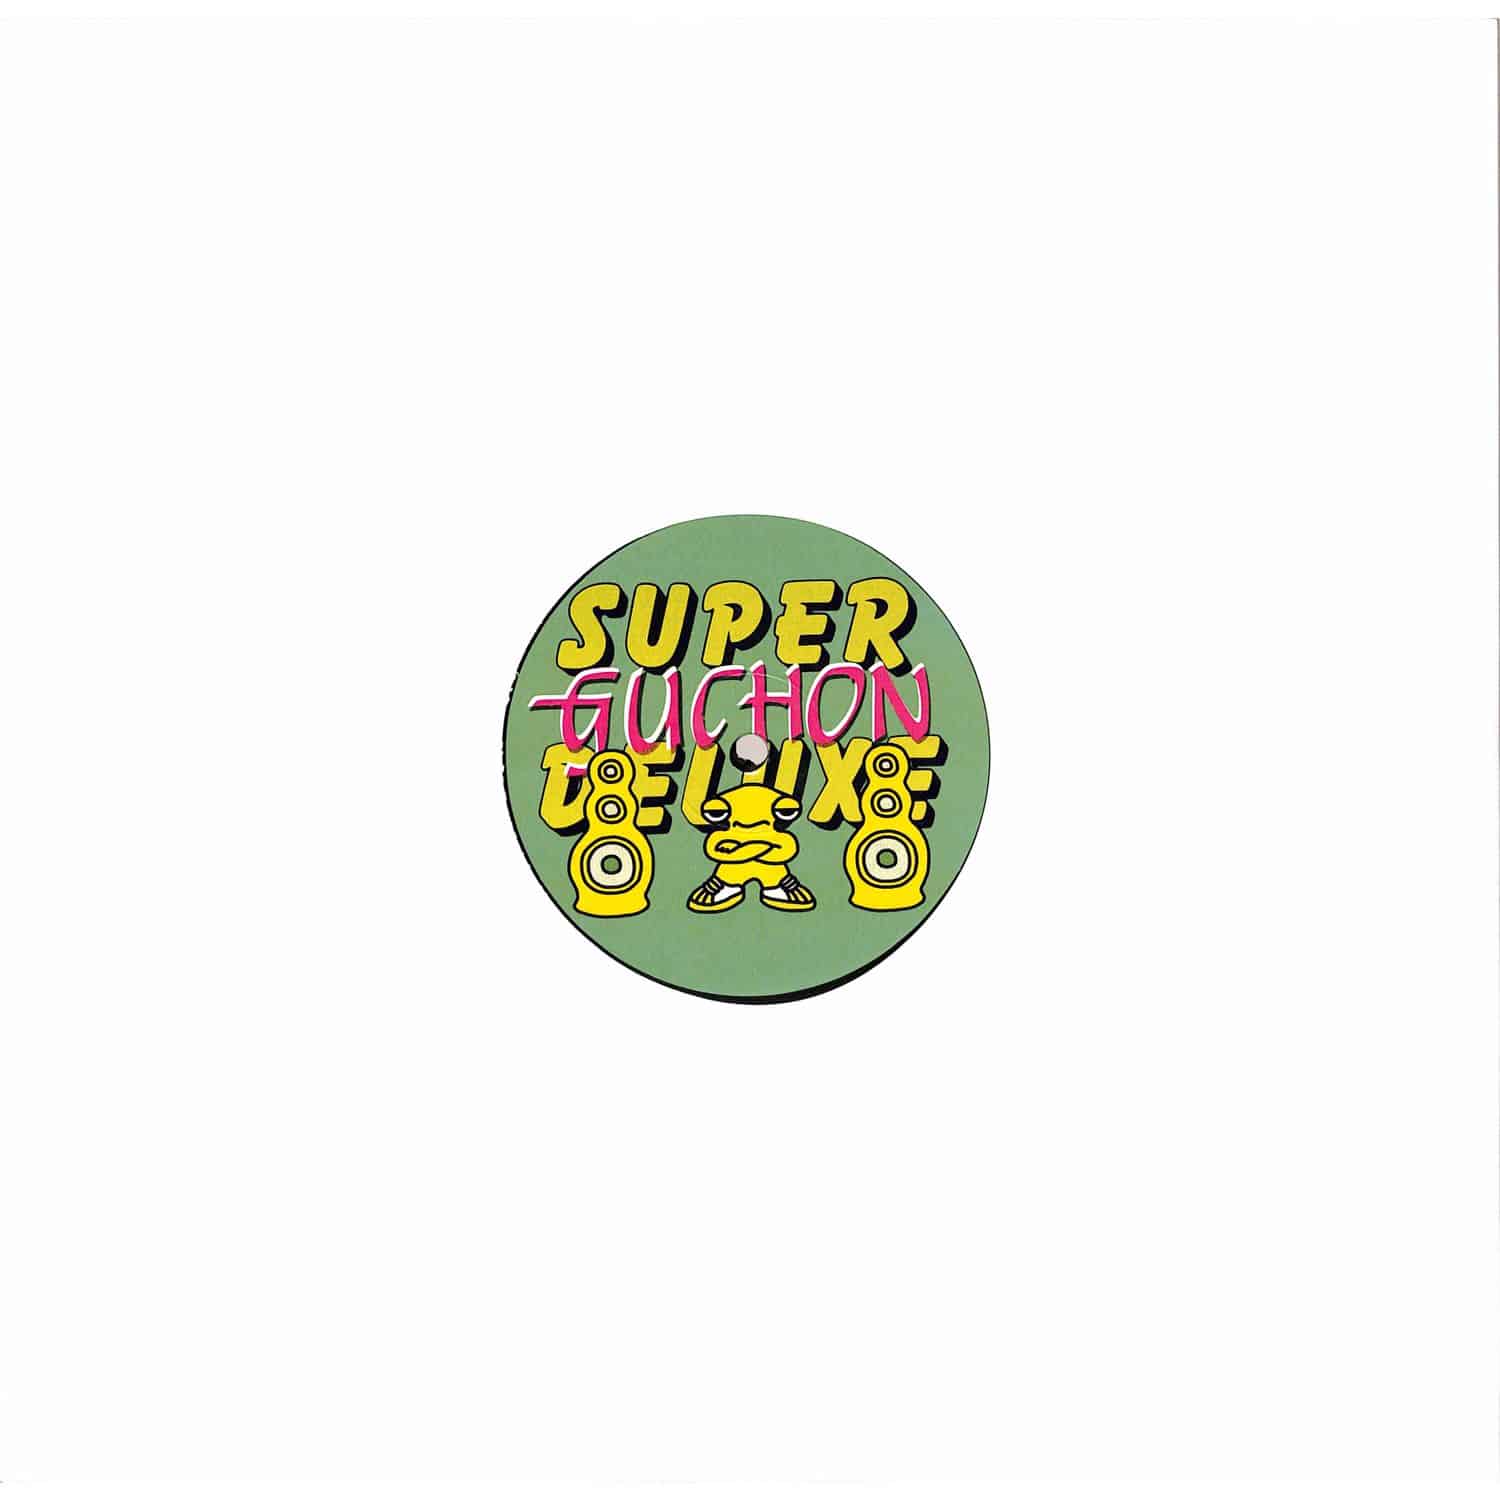 Guchon - SUPER DELUXE EP